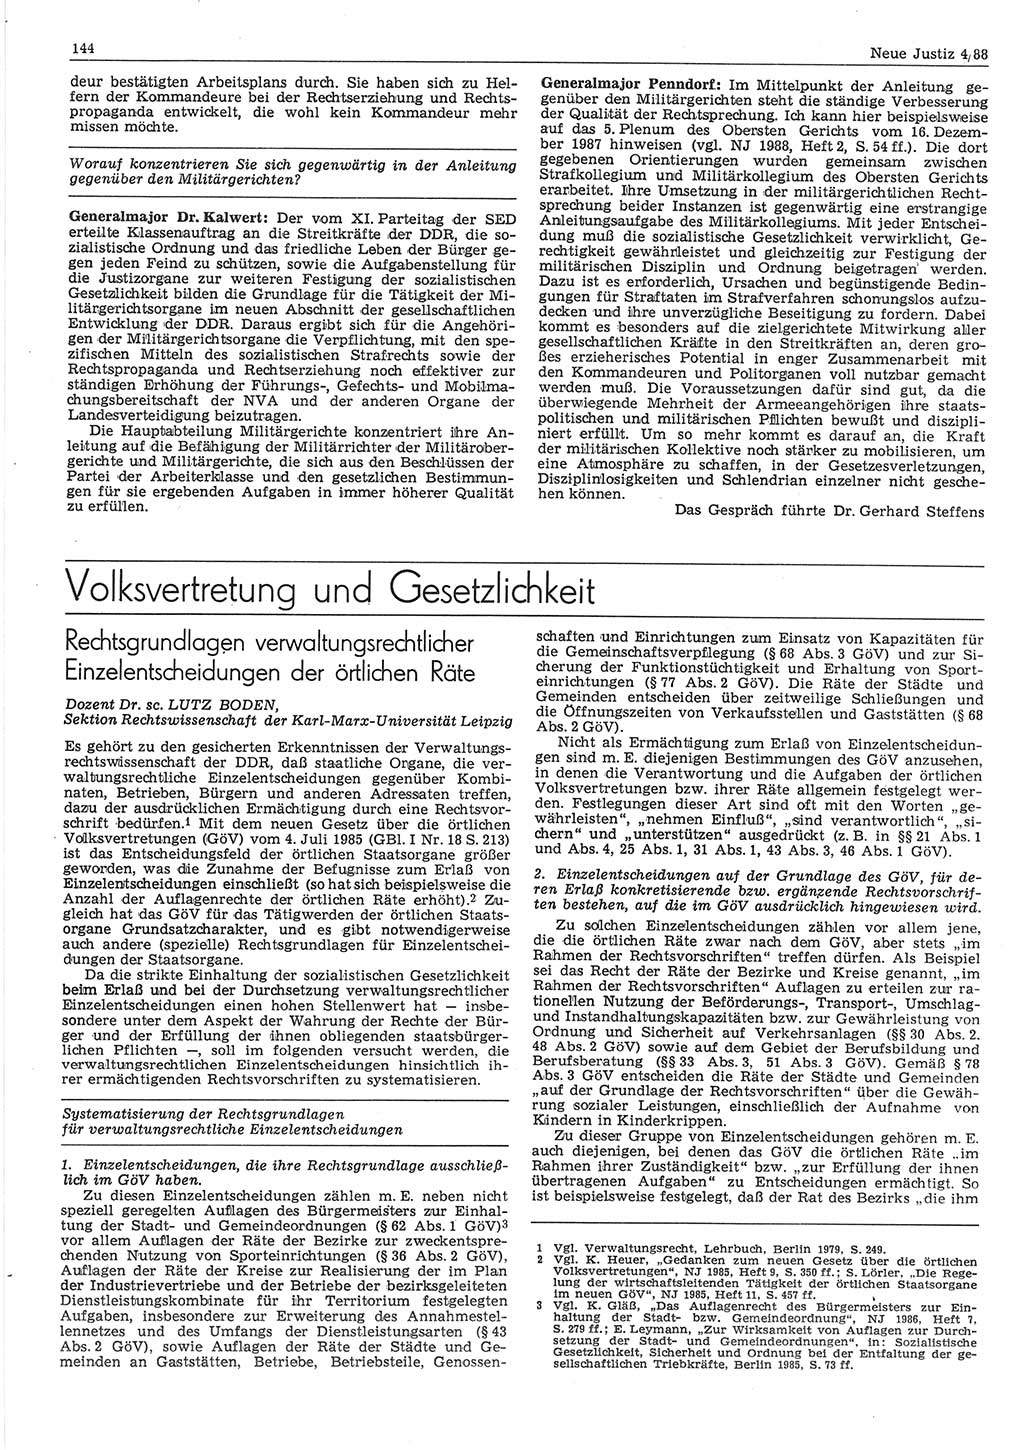 Neue Justiz (NJ), Zeitschrift für sozialistisches Recht und Gesetzlichkeit [Deutsche Demokratische Republik (DDR)], 42. Jahrgang 1988, Seite 144 (NJ DDR 1988, S. 144)